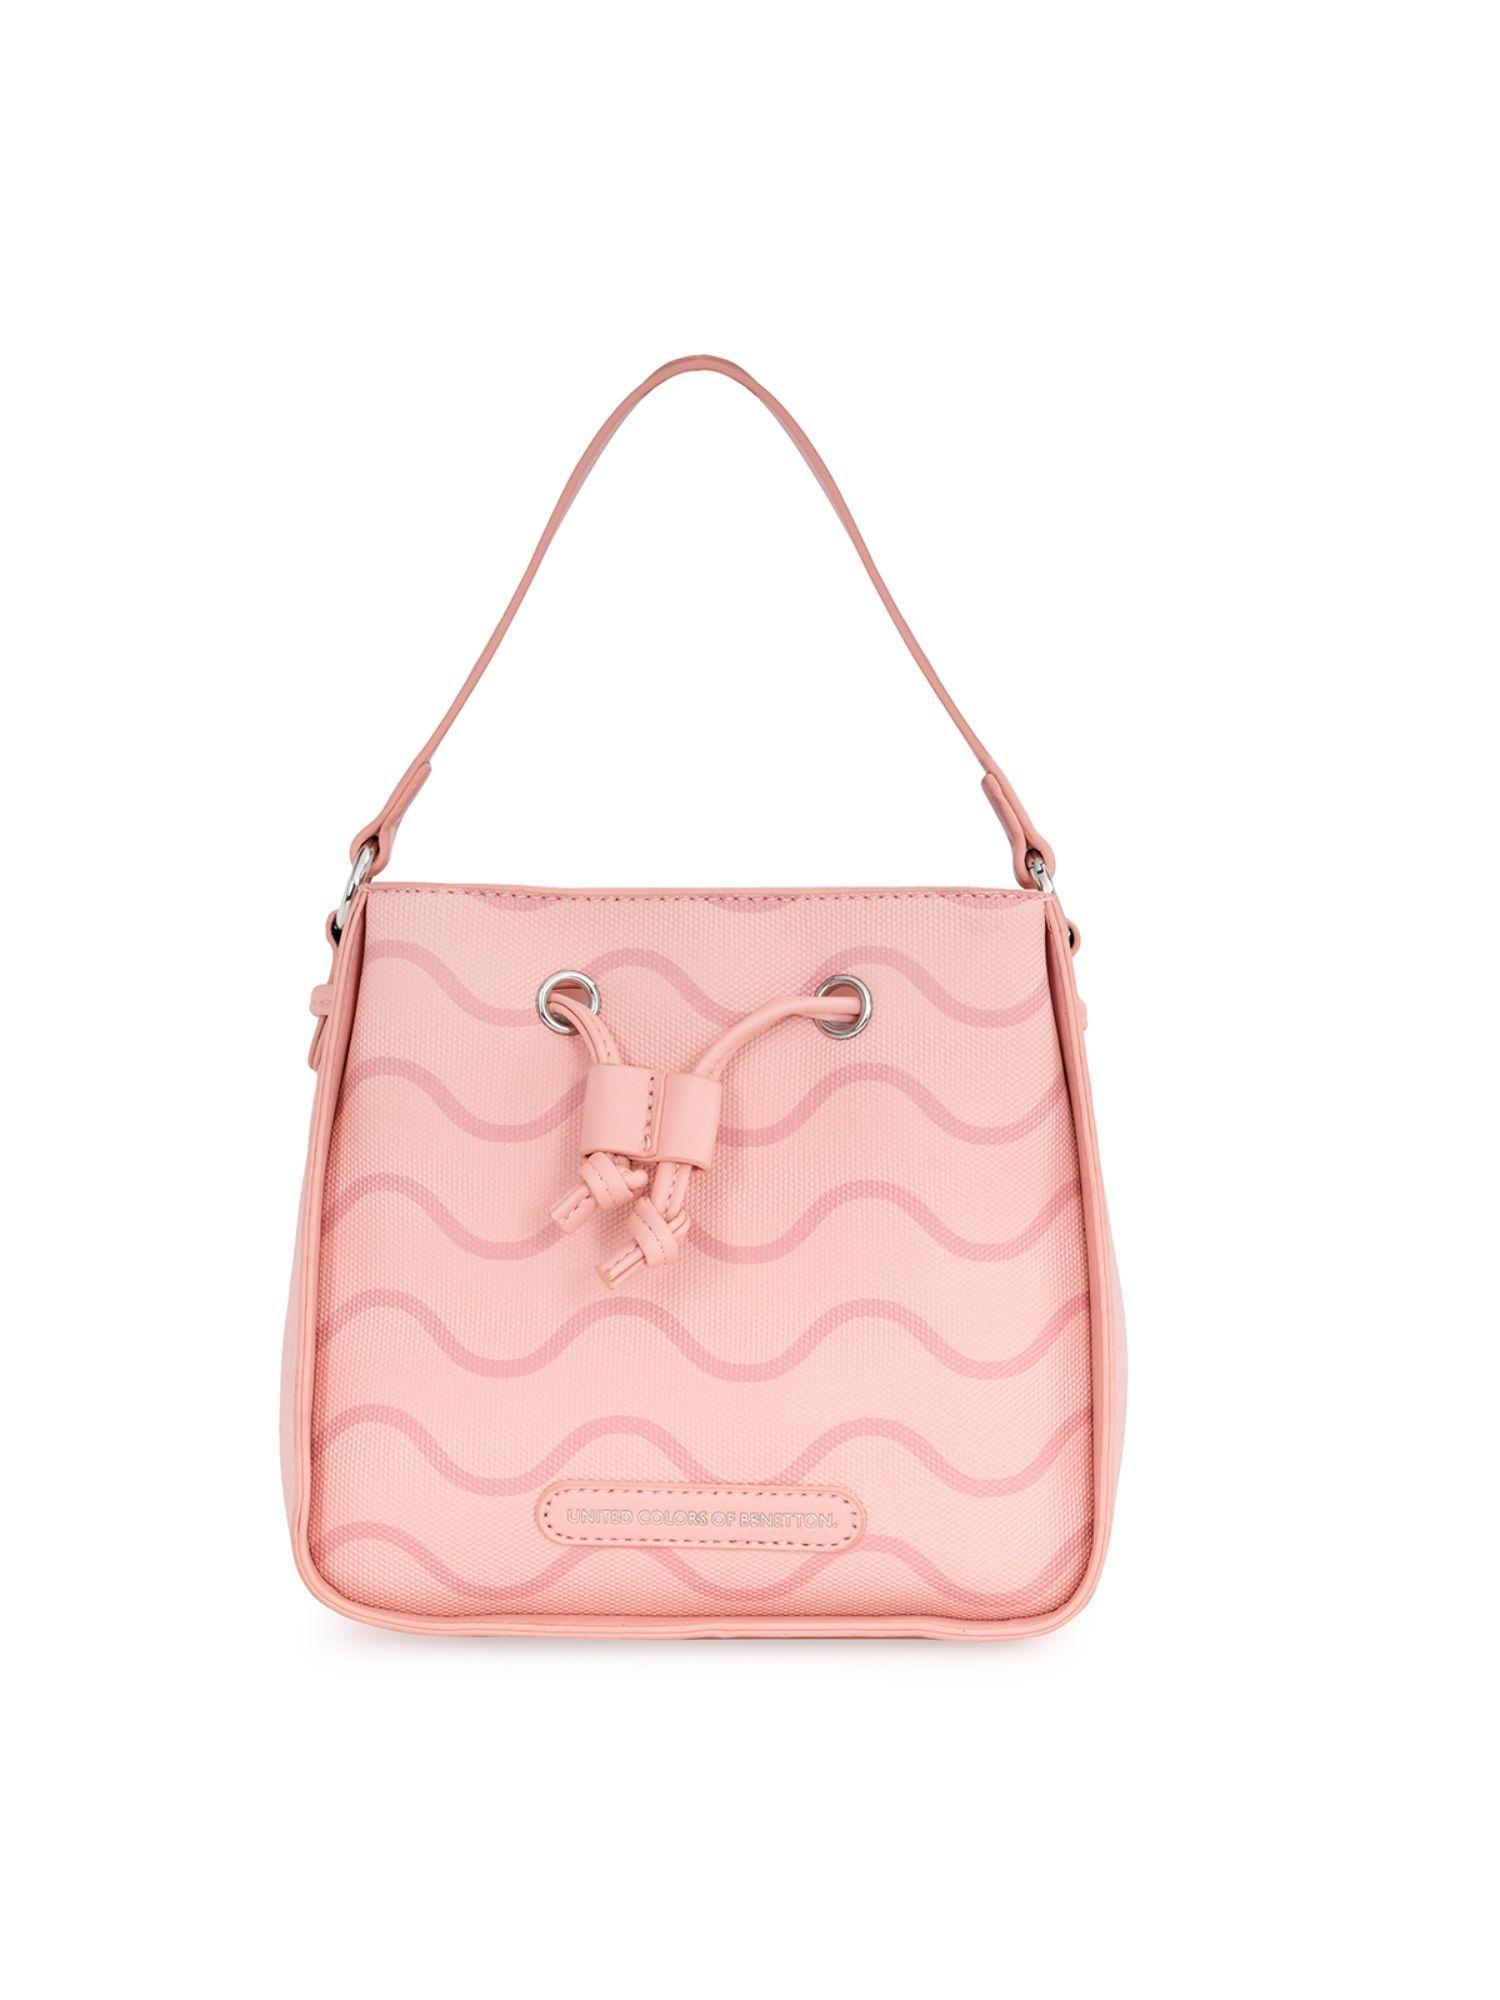 jaime women drawstring handbag pink